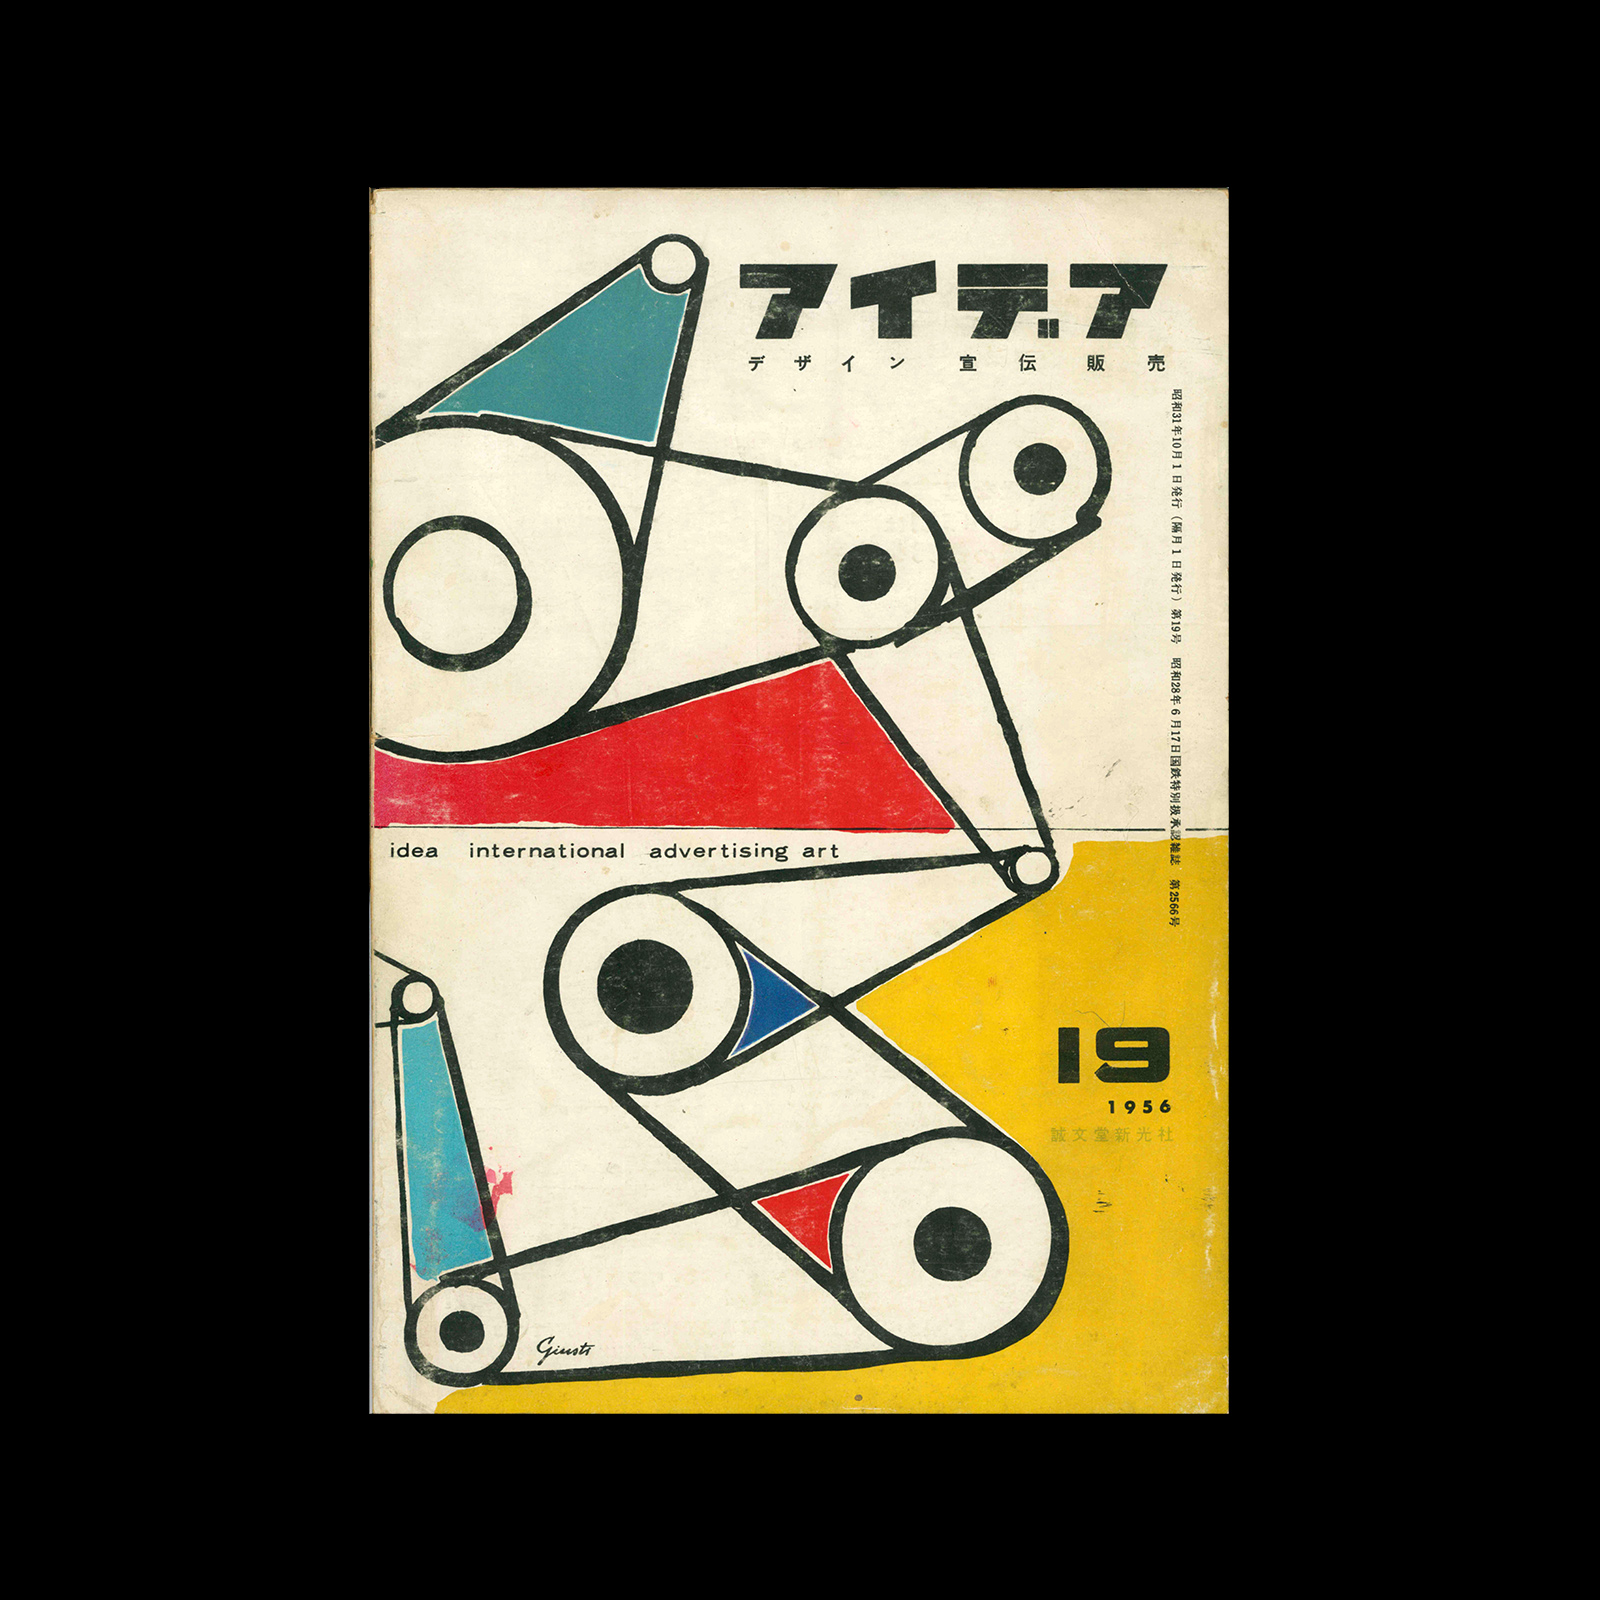 Idea 19, 1956. Cover design by George Giusti.